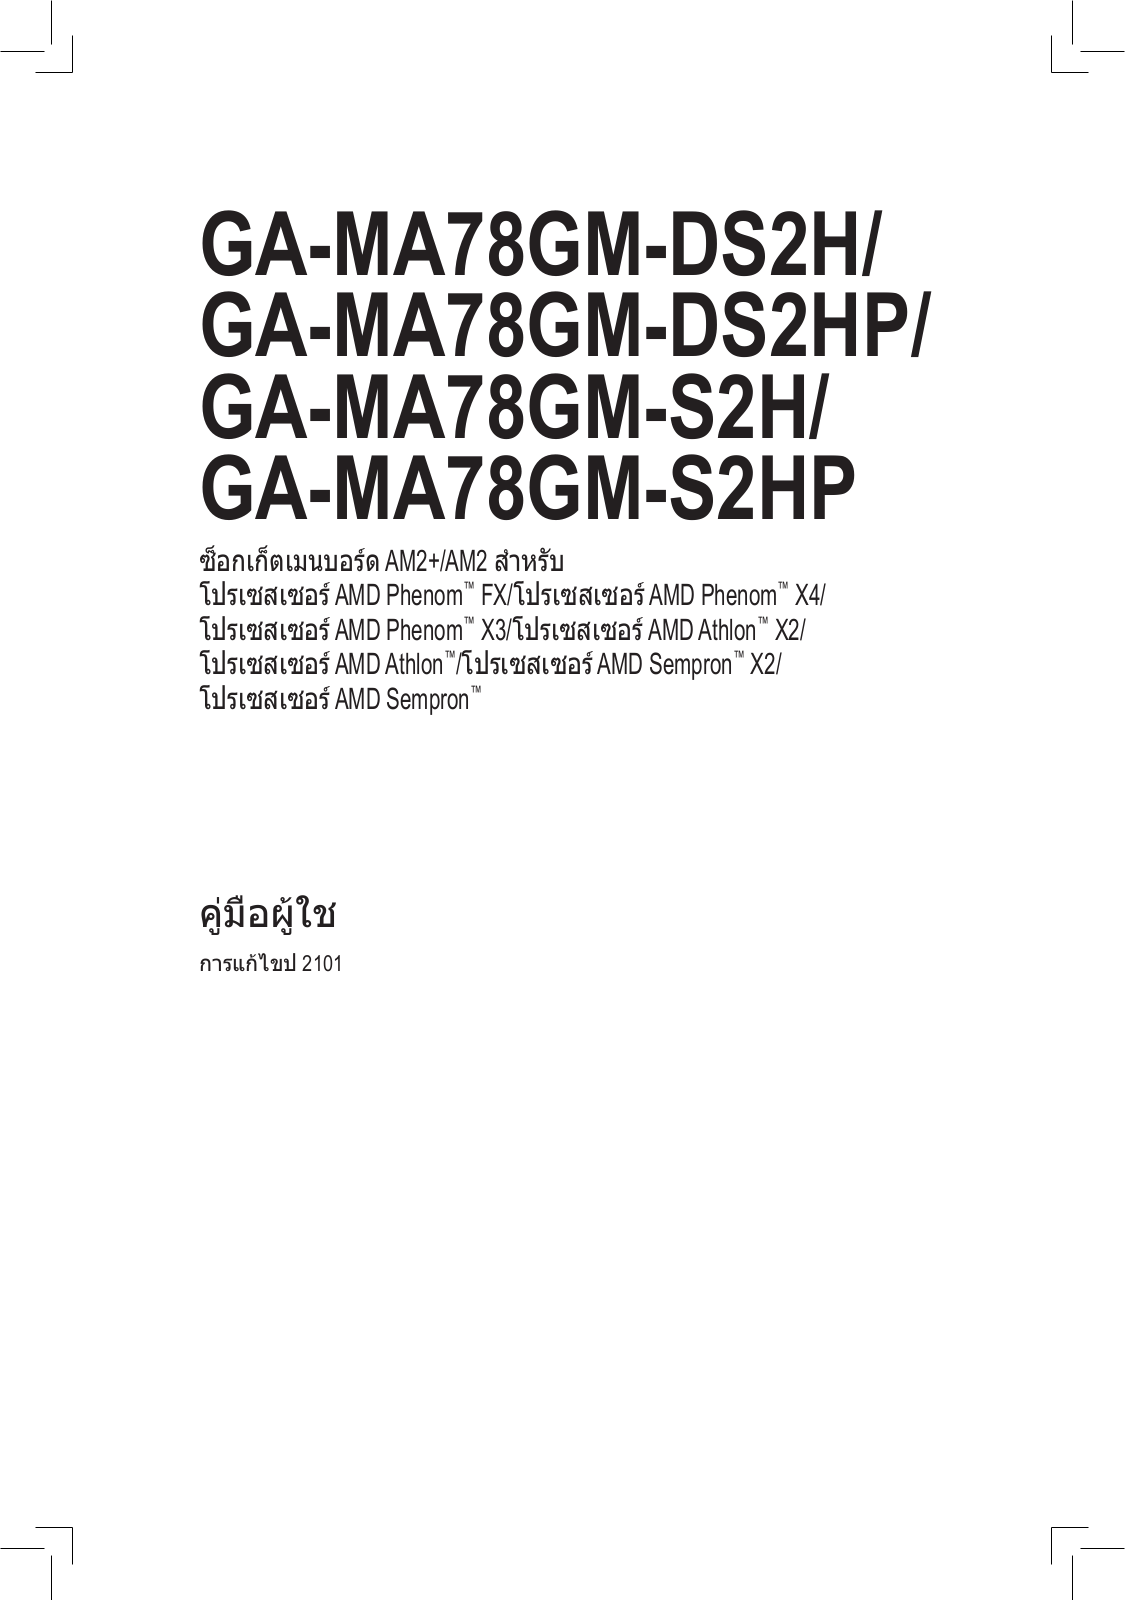 Gigabyte GA-MA78GM-S2HP, GA-MA78GM-S2H, GA-MA78GM-DS2HP, GA-MA78GM-DS2H User Manual